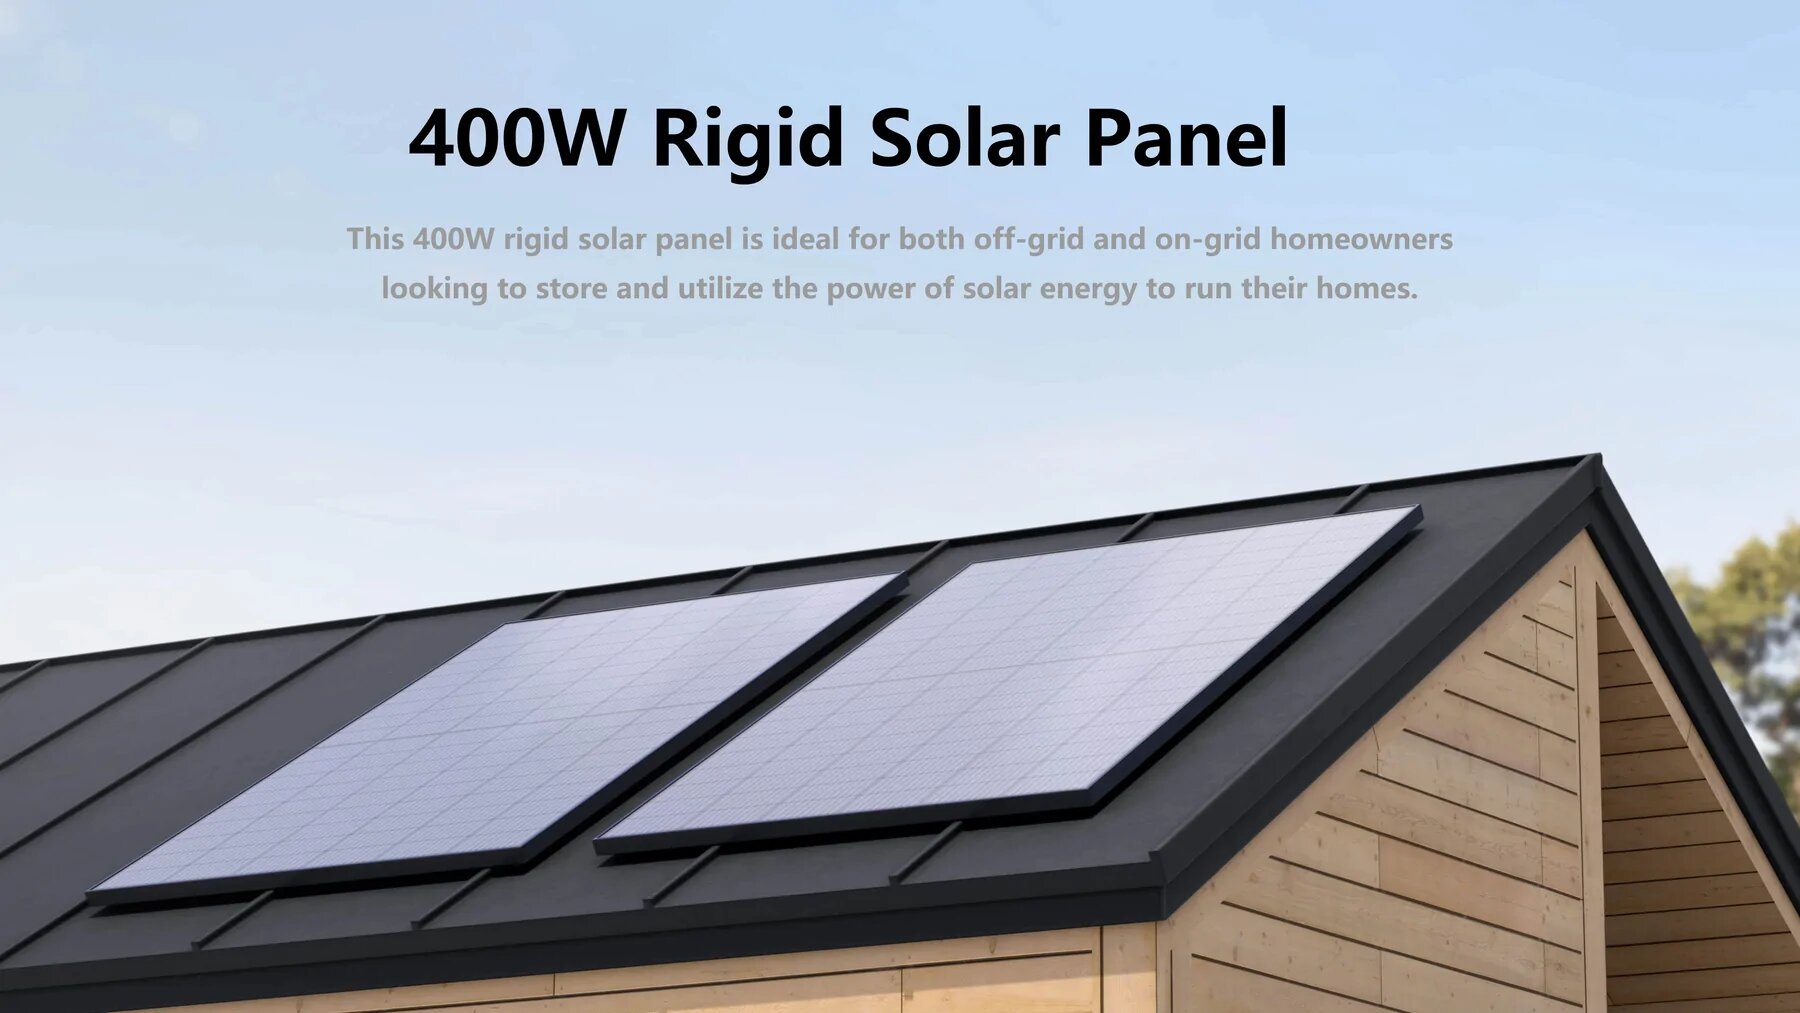 Achats 100 % sécurisés Garantie fiable Livraison gratuite Panneaux Solaires Rigides EcoFlow 400W